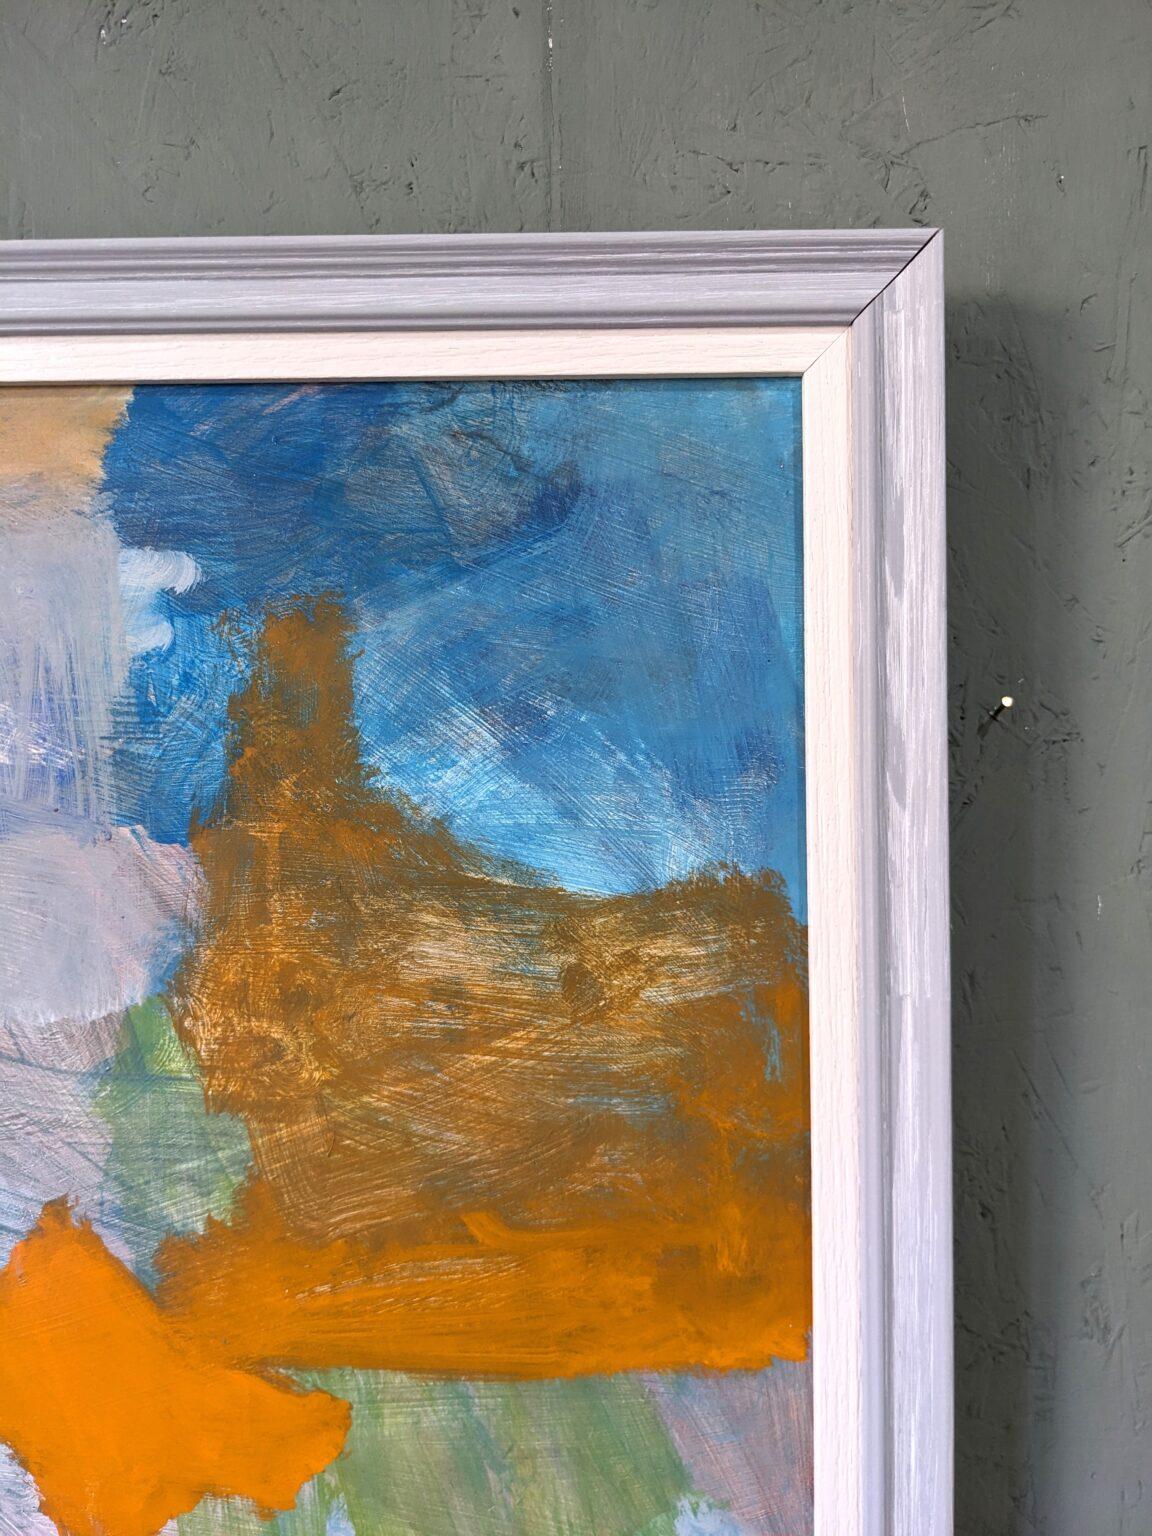 ABSTRACTION ESTIVALE
Taille : 65,5 x 65,5 cm (cadre compris)
Huile sur carton

Une peinture abstraite de paysage côtier très atmosphérique, exécutée à l'huile sur panneau par l'artiste britannique contemporain Ian Mood.

Inspirée par les côtes,